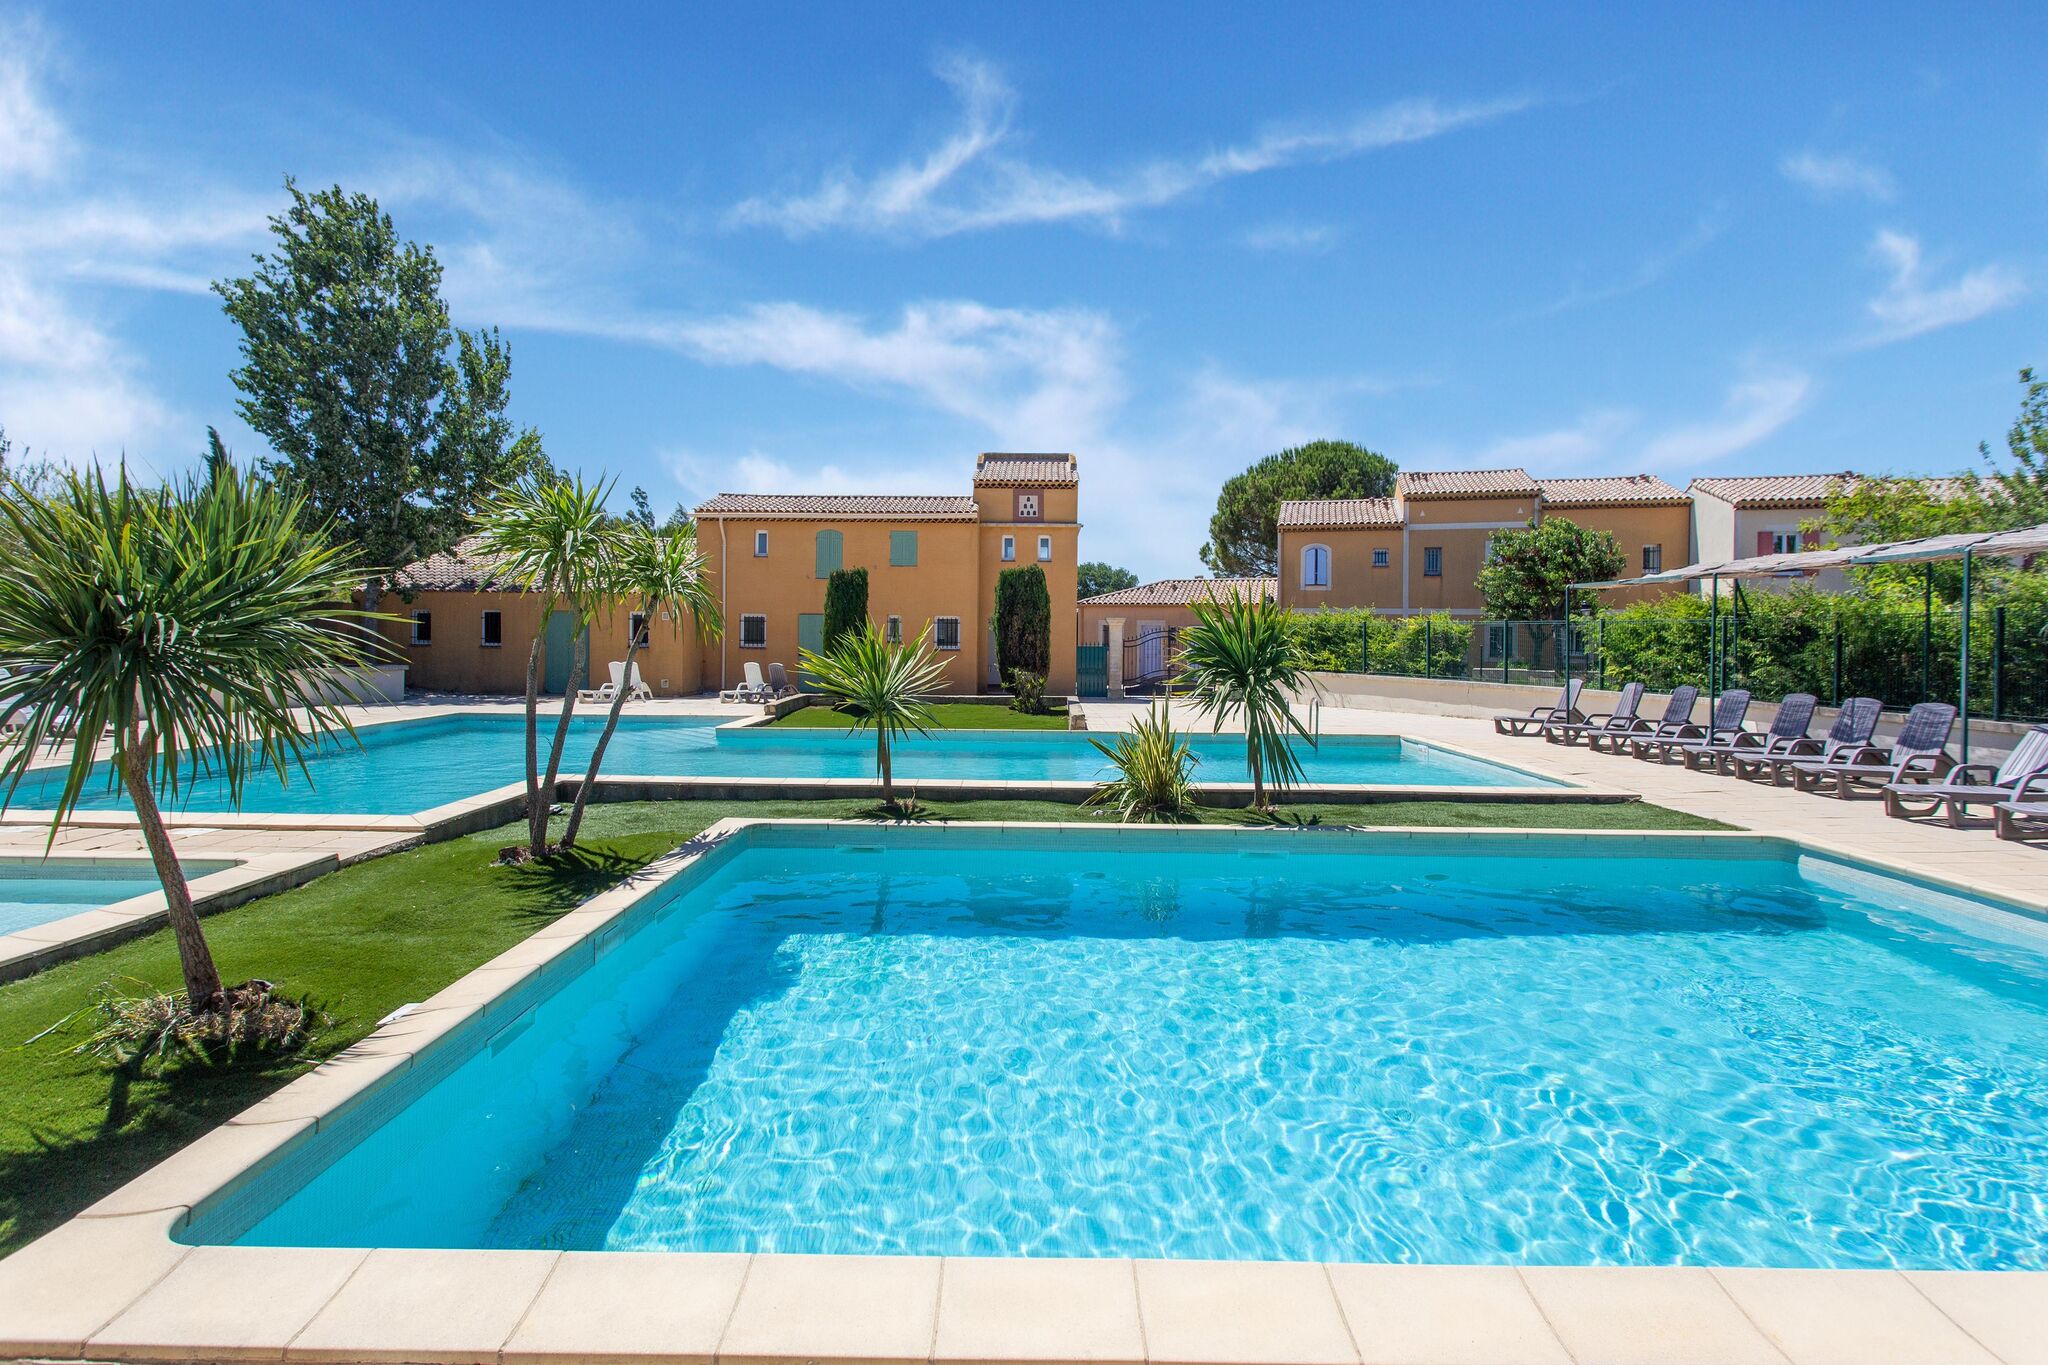 Vakantiehuis in de buurt van Arles met groot zwembad en tuin